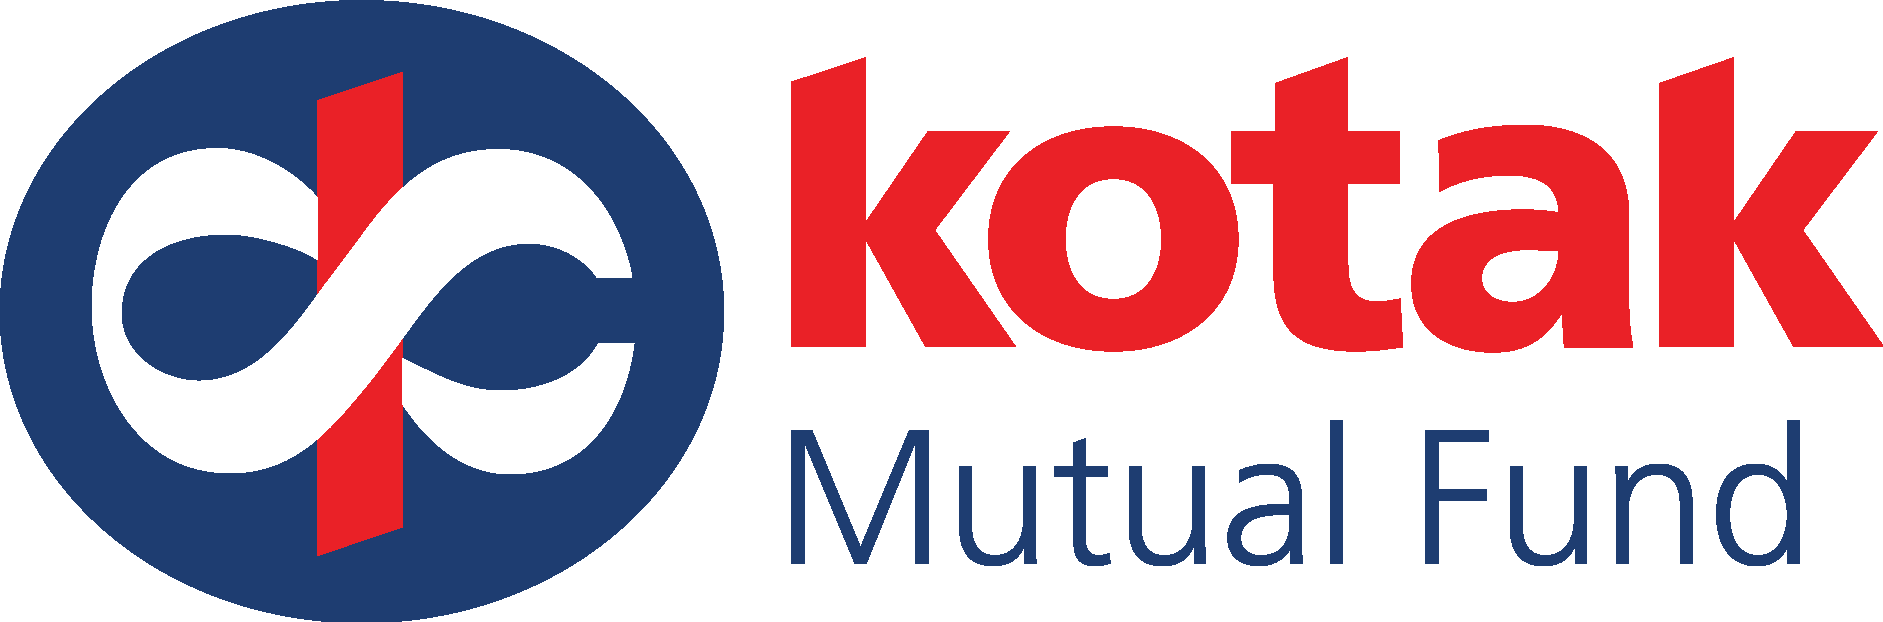 KOTAK MAHINDRA MUTUAL FUND Logo Vector - (.Ai .PNG .SVG .EPS Free Download)